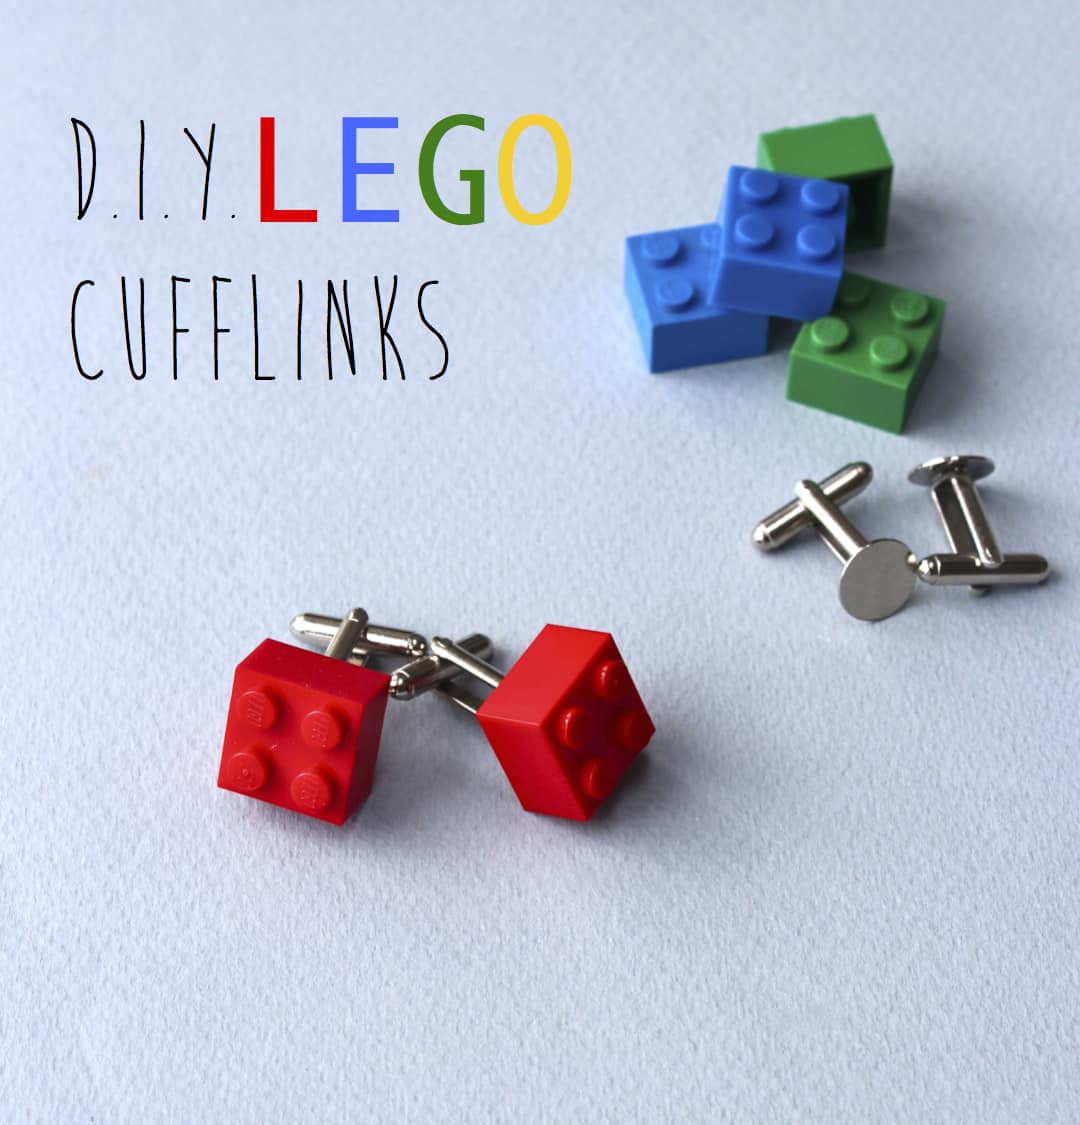 25 ideas lego cufflinks 1